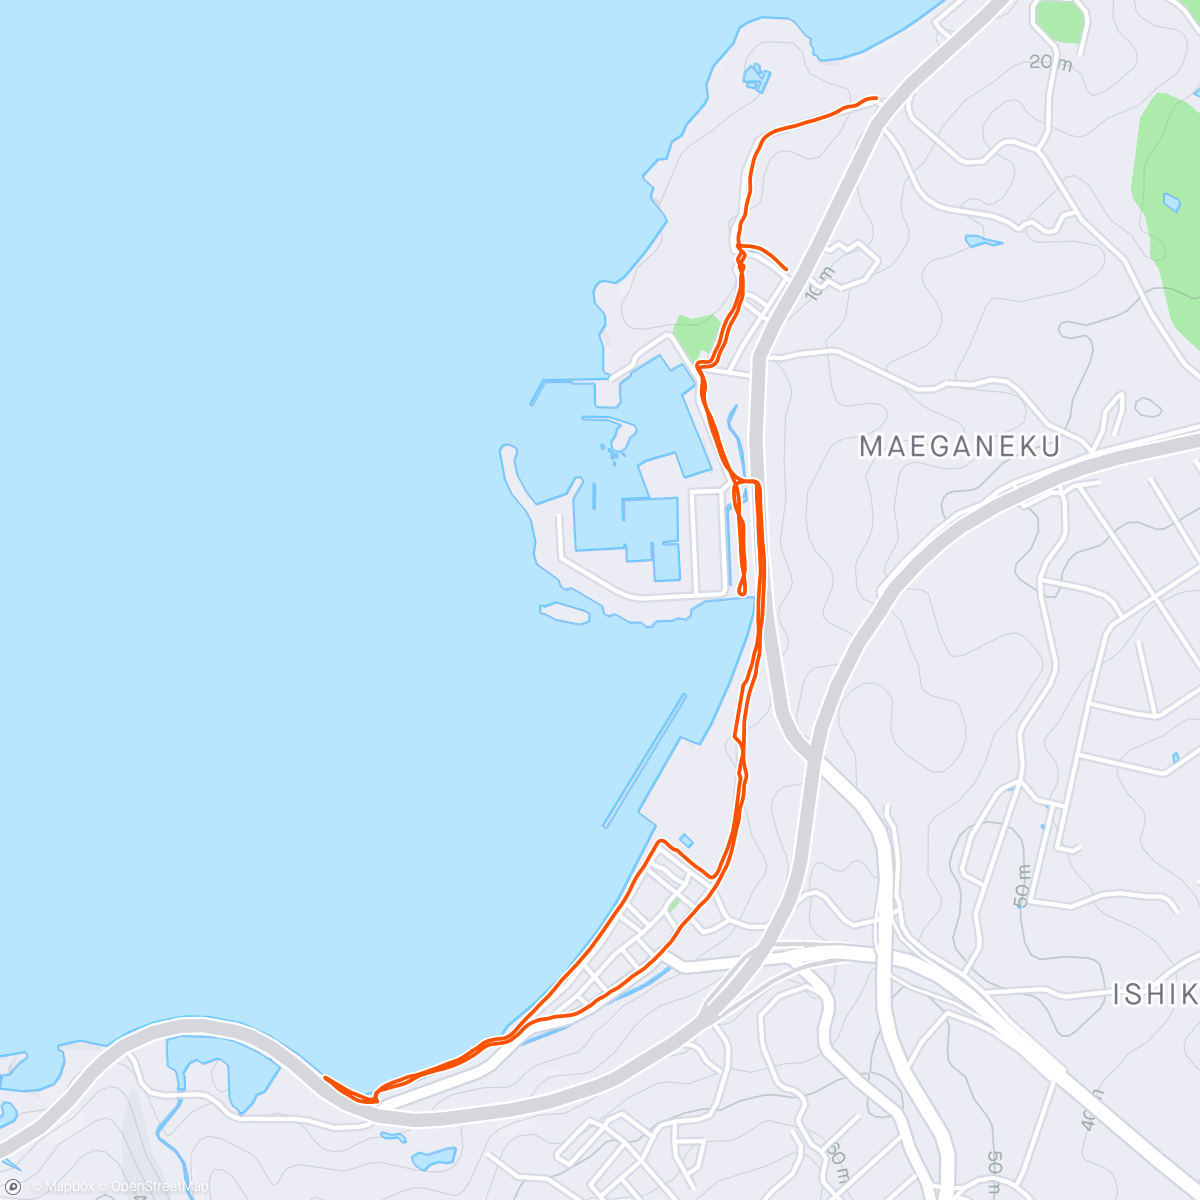 「しごおわジョギング in Okinawa 2」活動的地圖